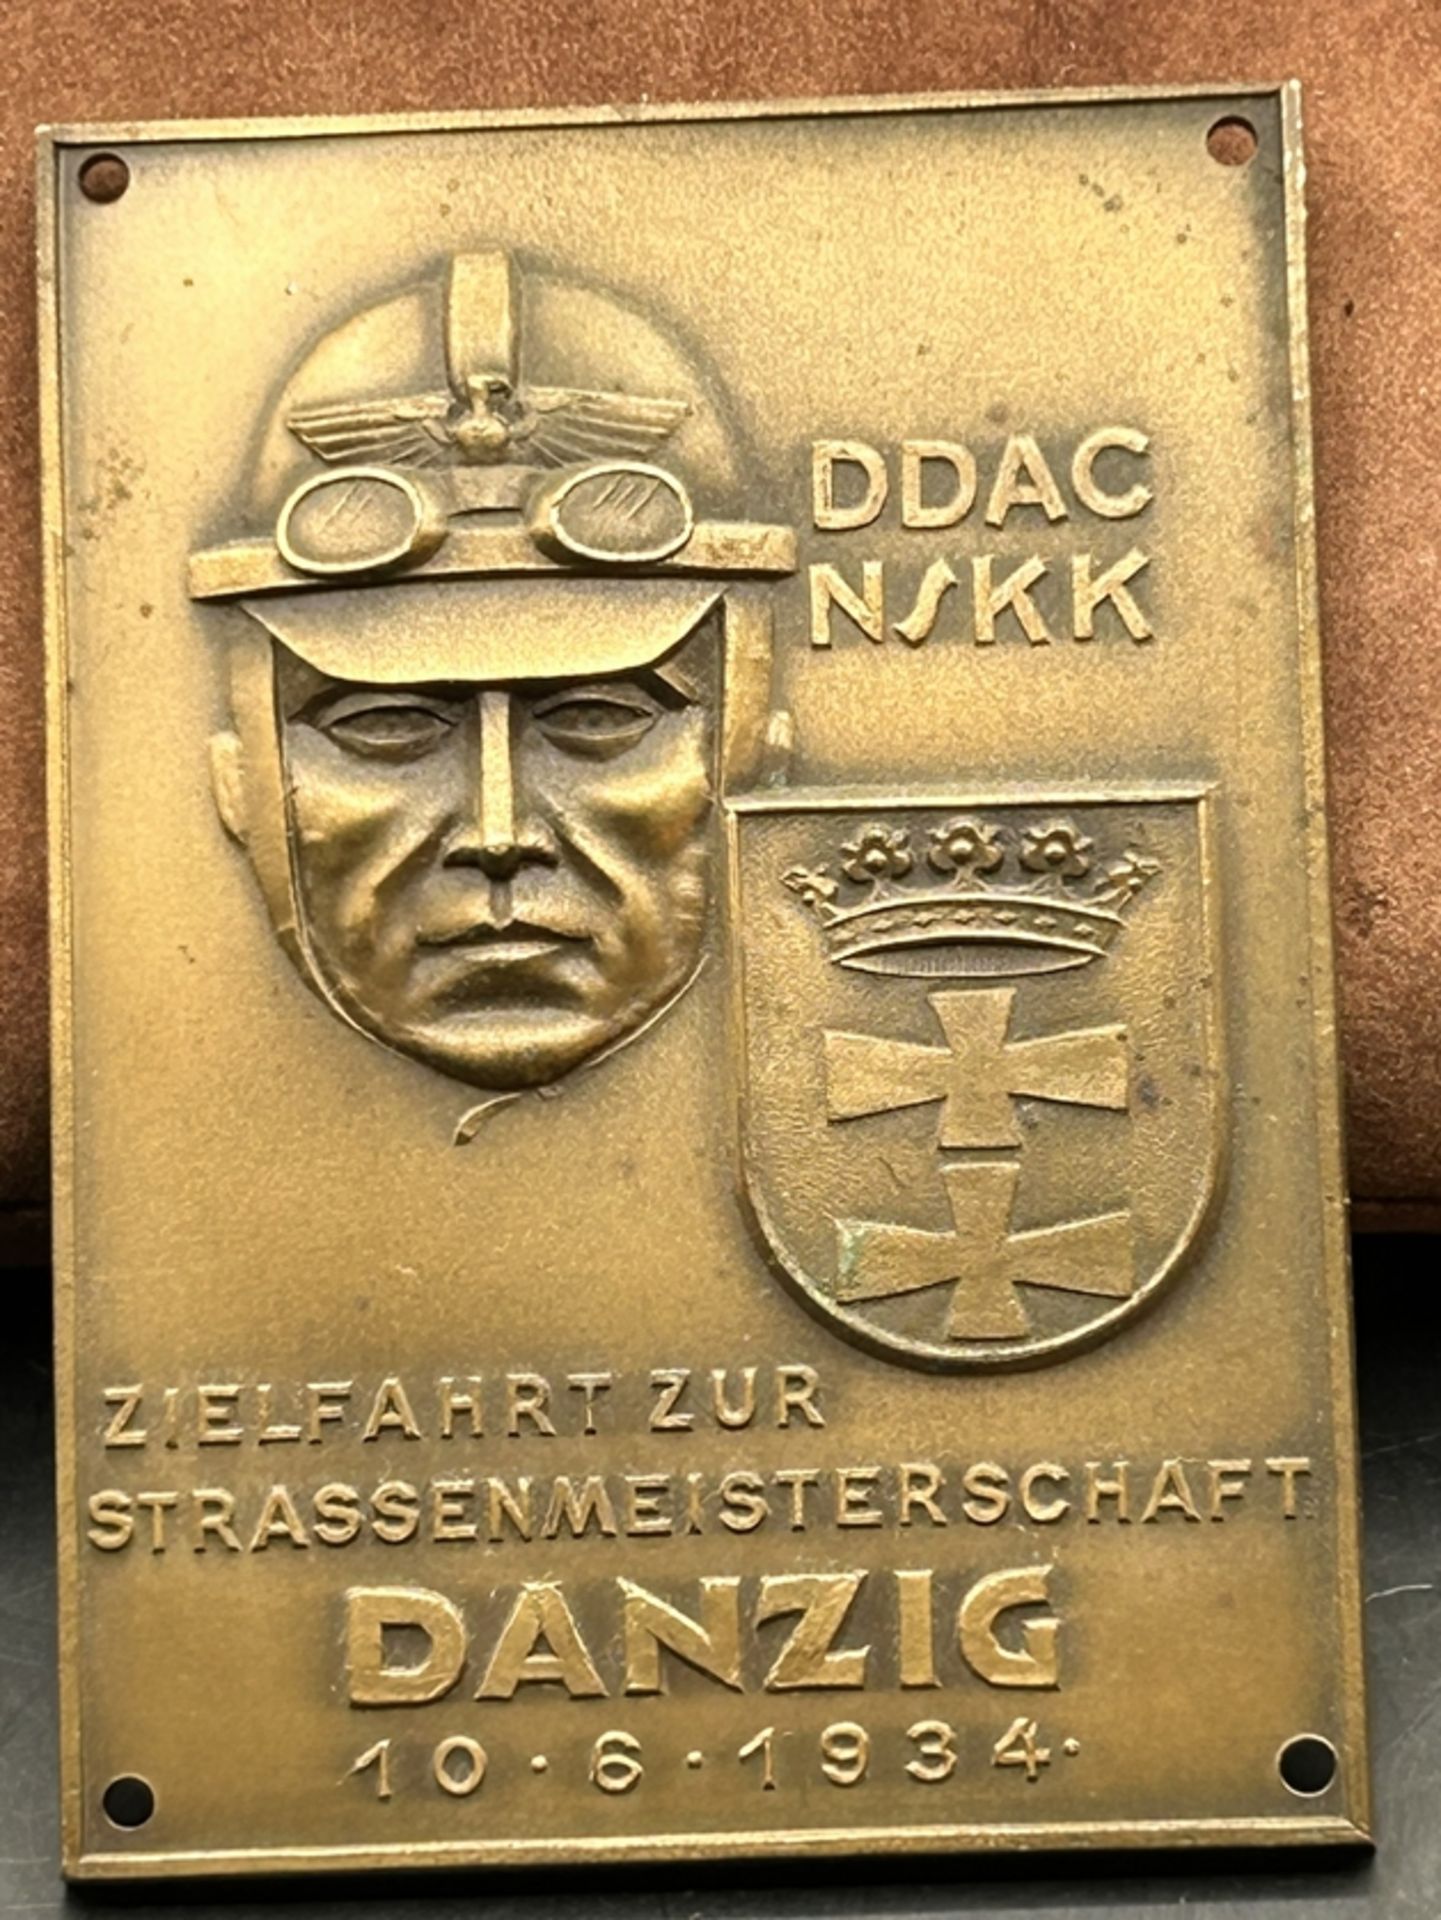 Bronzeplakette Danzig 1934-DDAC-NSKK-Zielfahrt zur Strassenmeisterschaft mit Wappen Danzig, 9x6 cm,